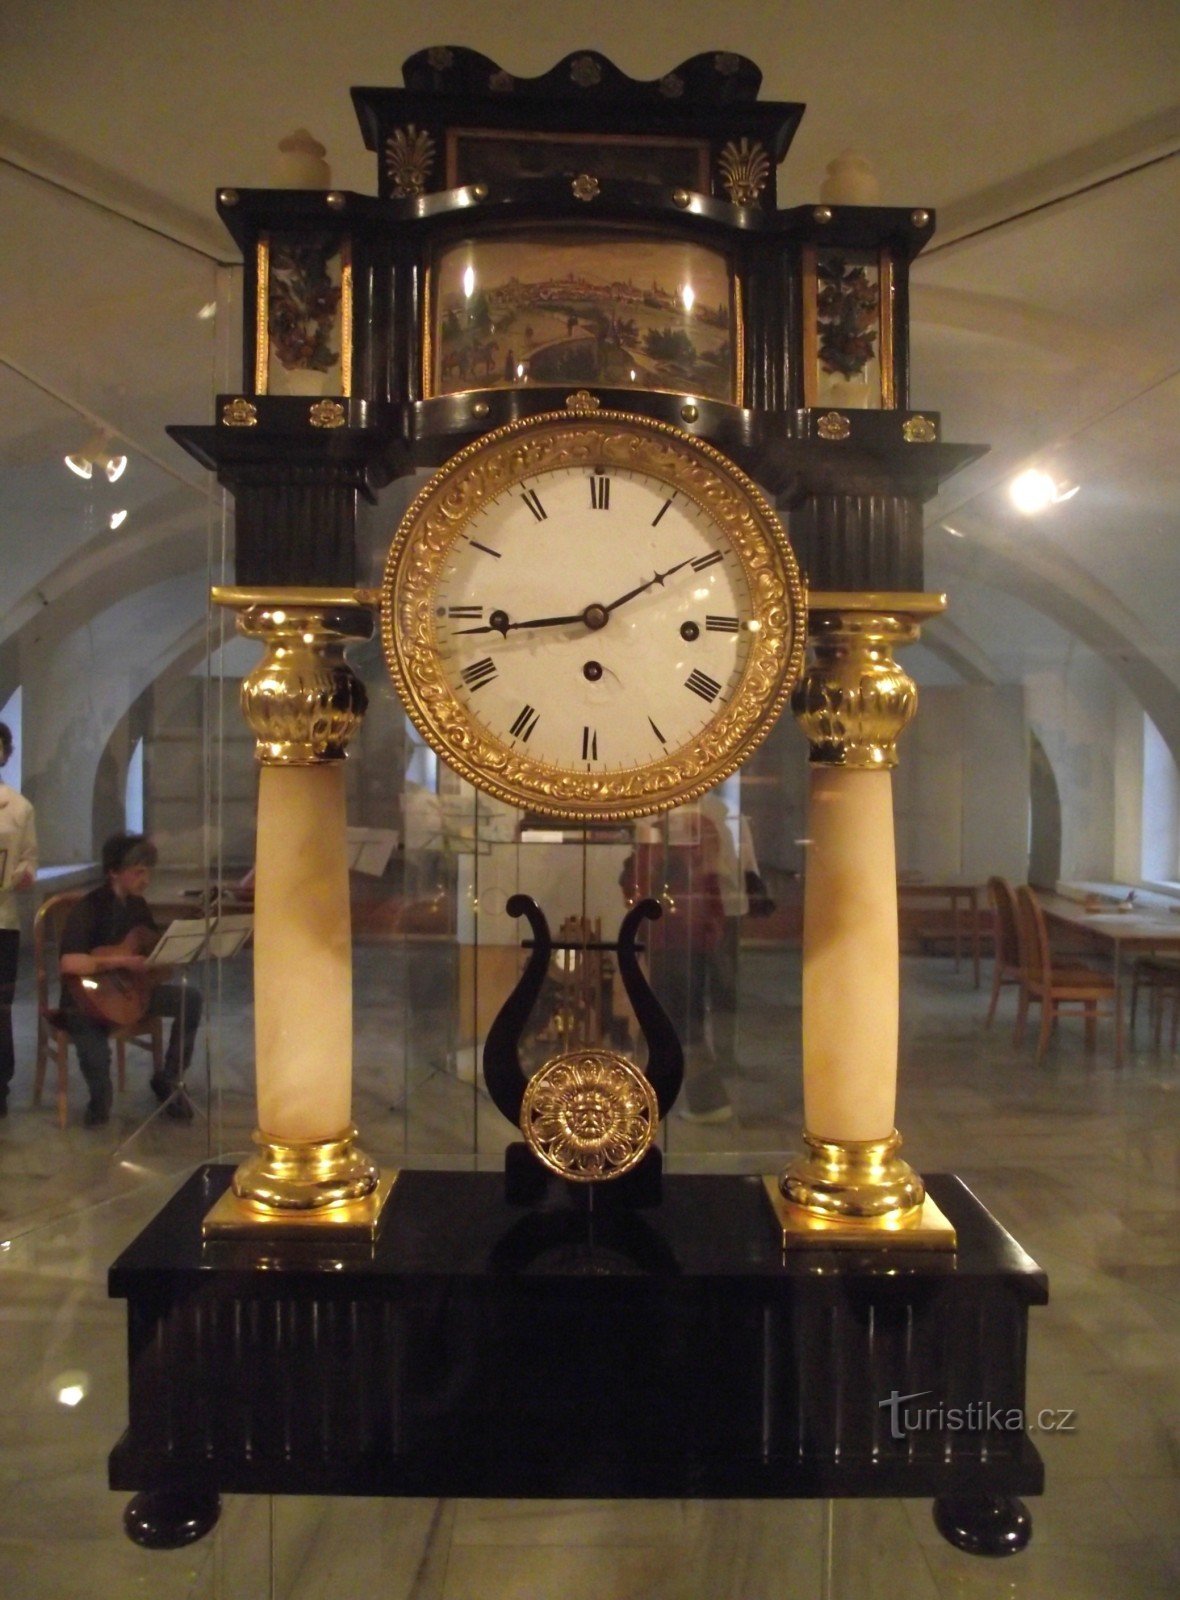 Ο χρόνος δεν μπορεί να σταματήσει... (Muzeum Šumperk)